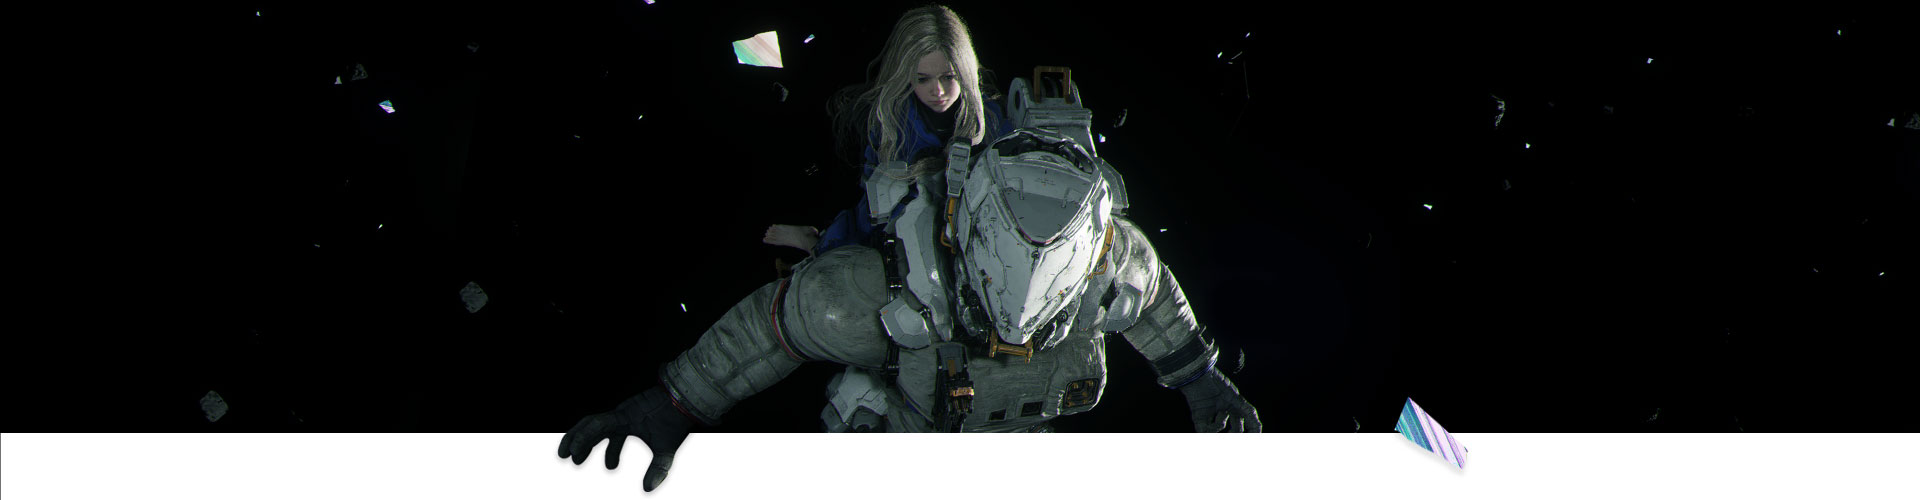 Une fille s’accroche à un astronaute à travers l’espace